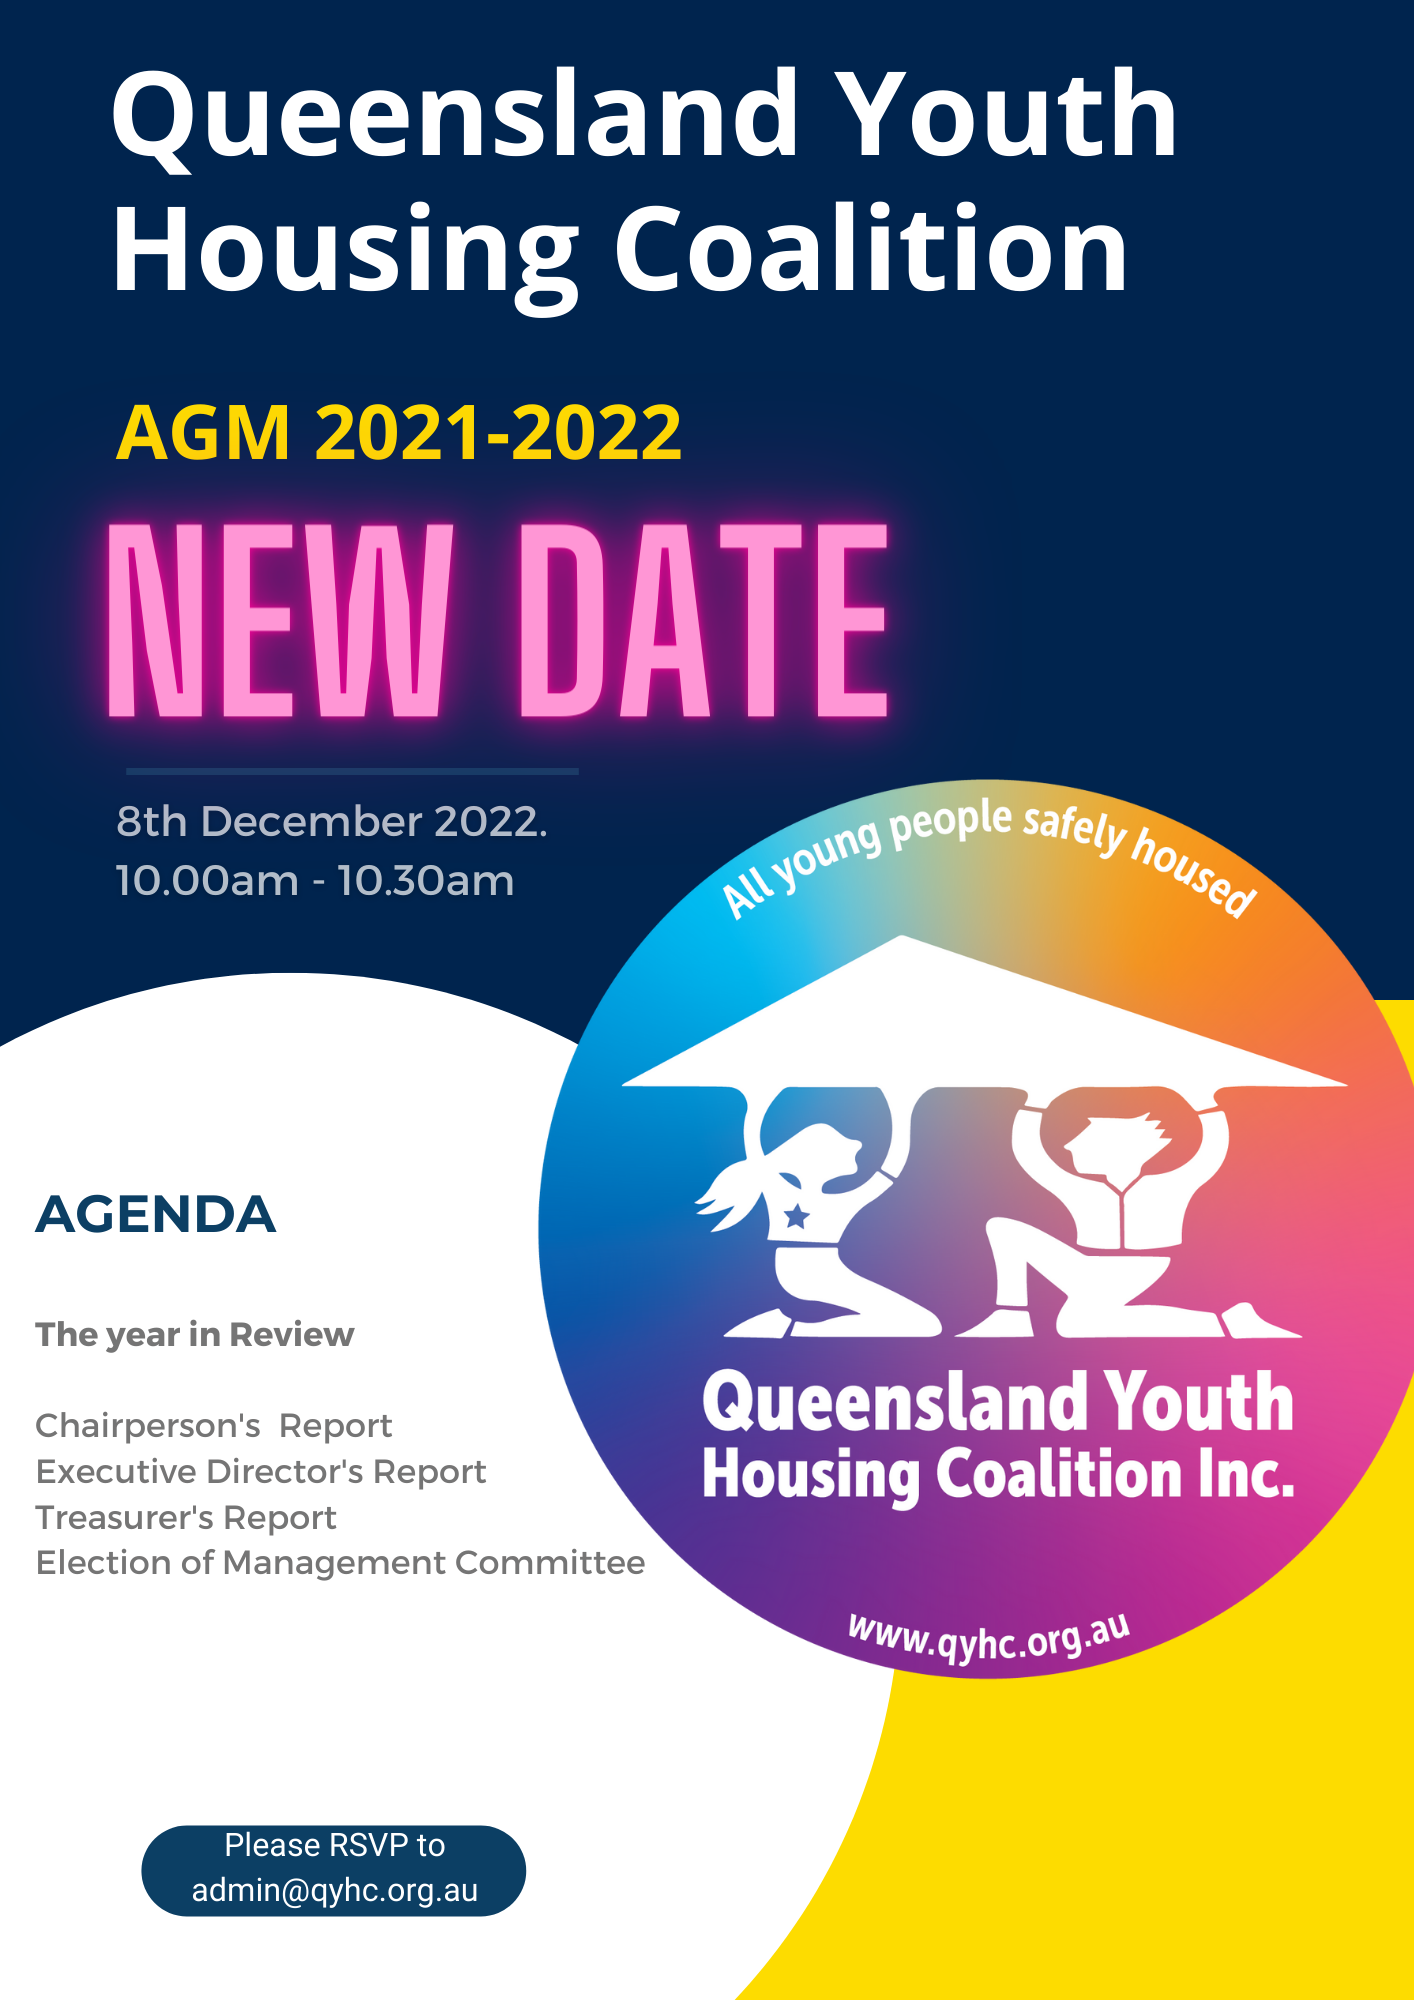 QYHC AGM invite 2022